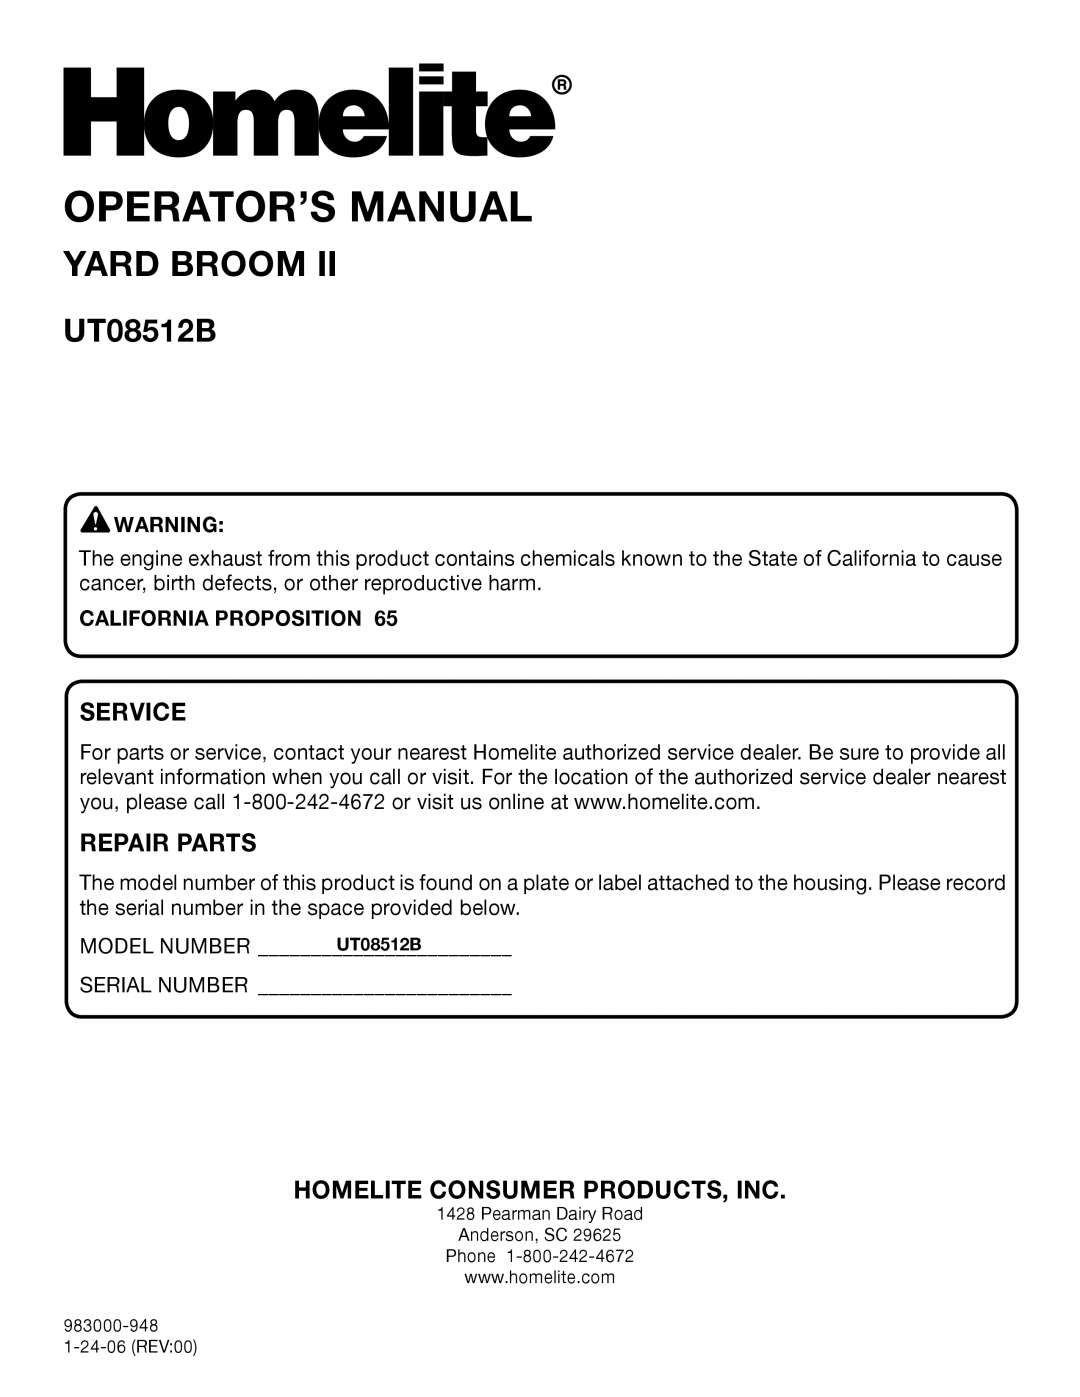 Homelite UT08512B manual Operator’S Manual, Yard Broom, Service, Repair Parts, Homelite Consumer Products, Inc 